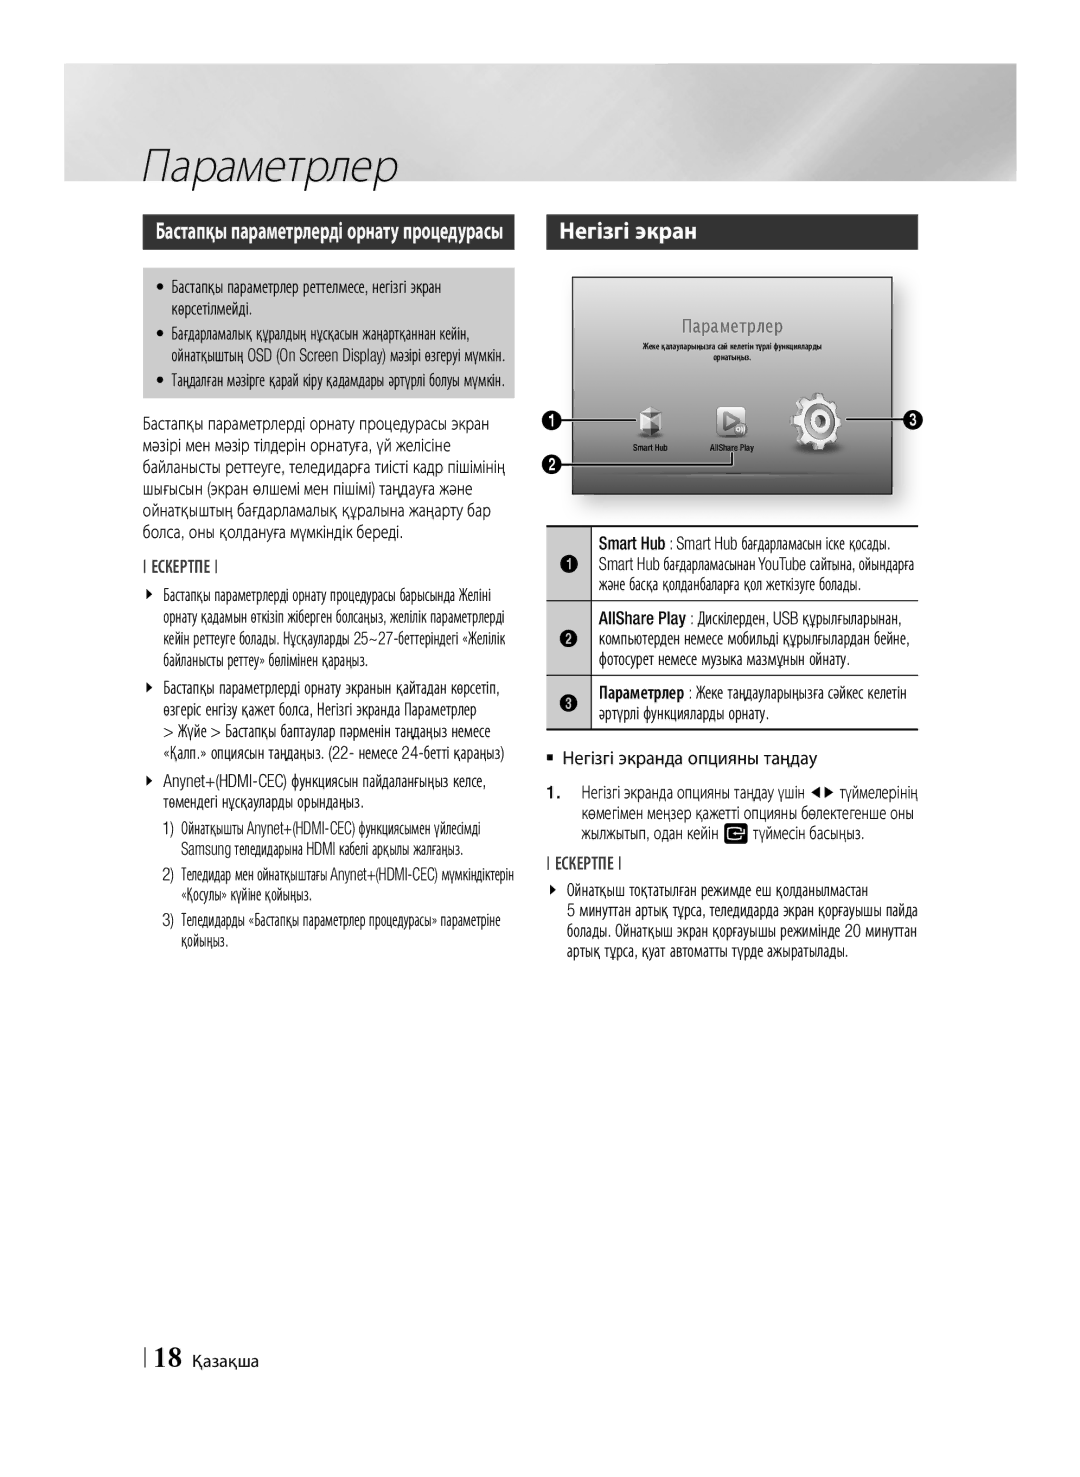 Samsung BD-ES6000/RU manual Параметрлер, Әртүрлі функцияларды орнату, `` Негізгі экранда опцияны таңдау, 18 Қазақша 